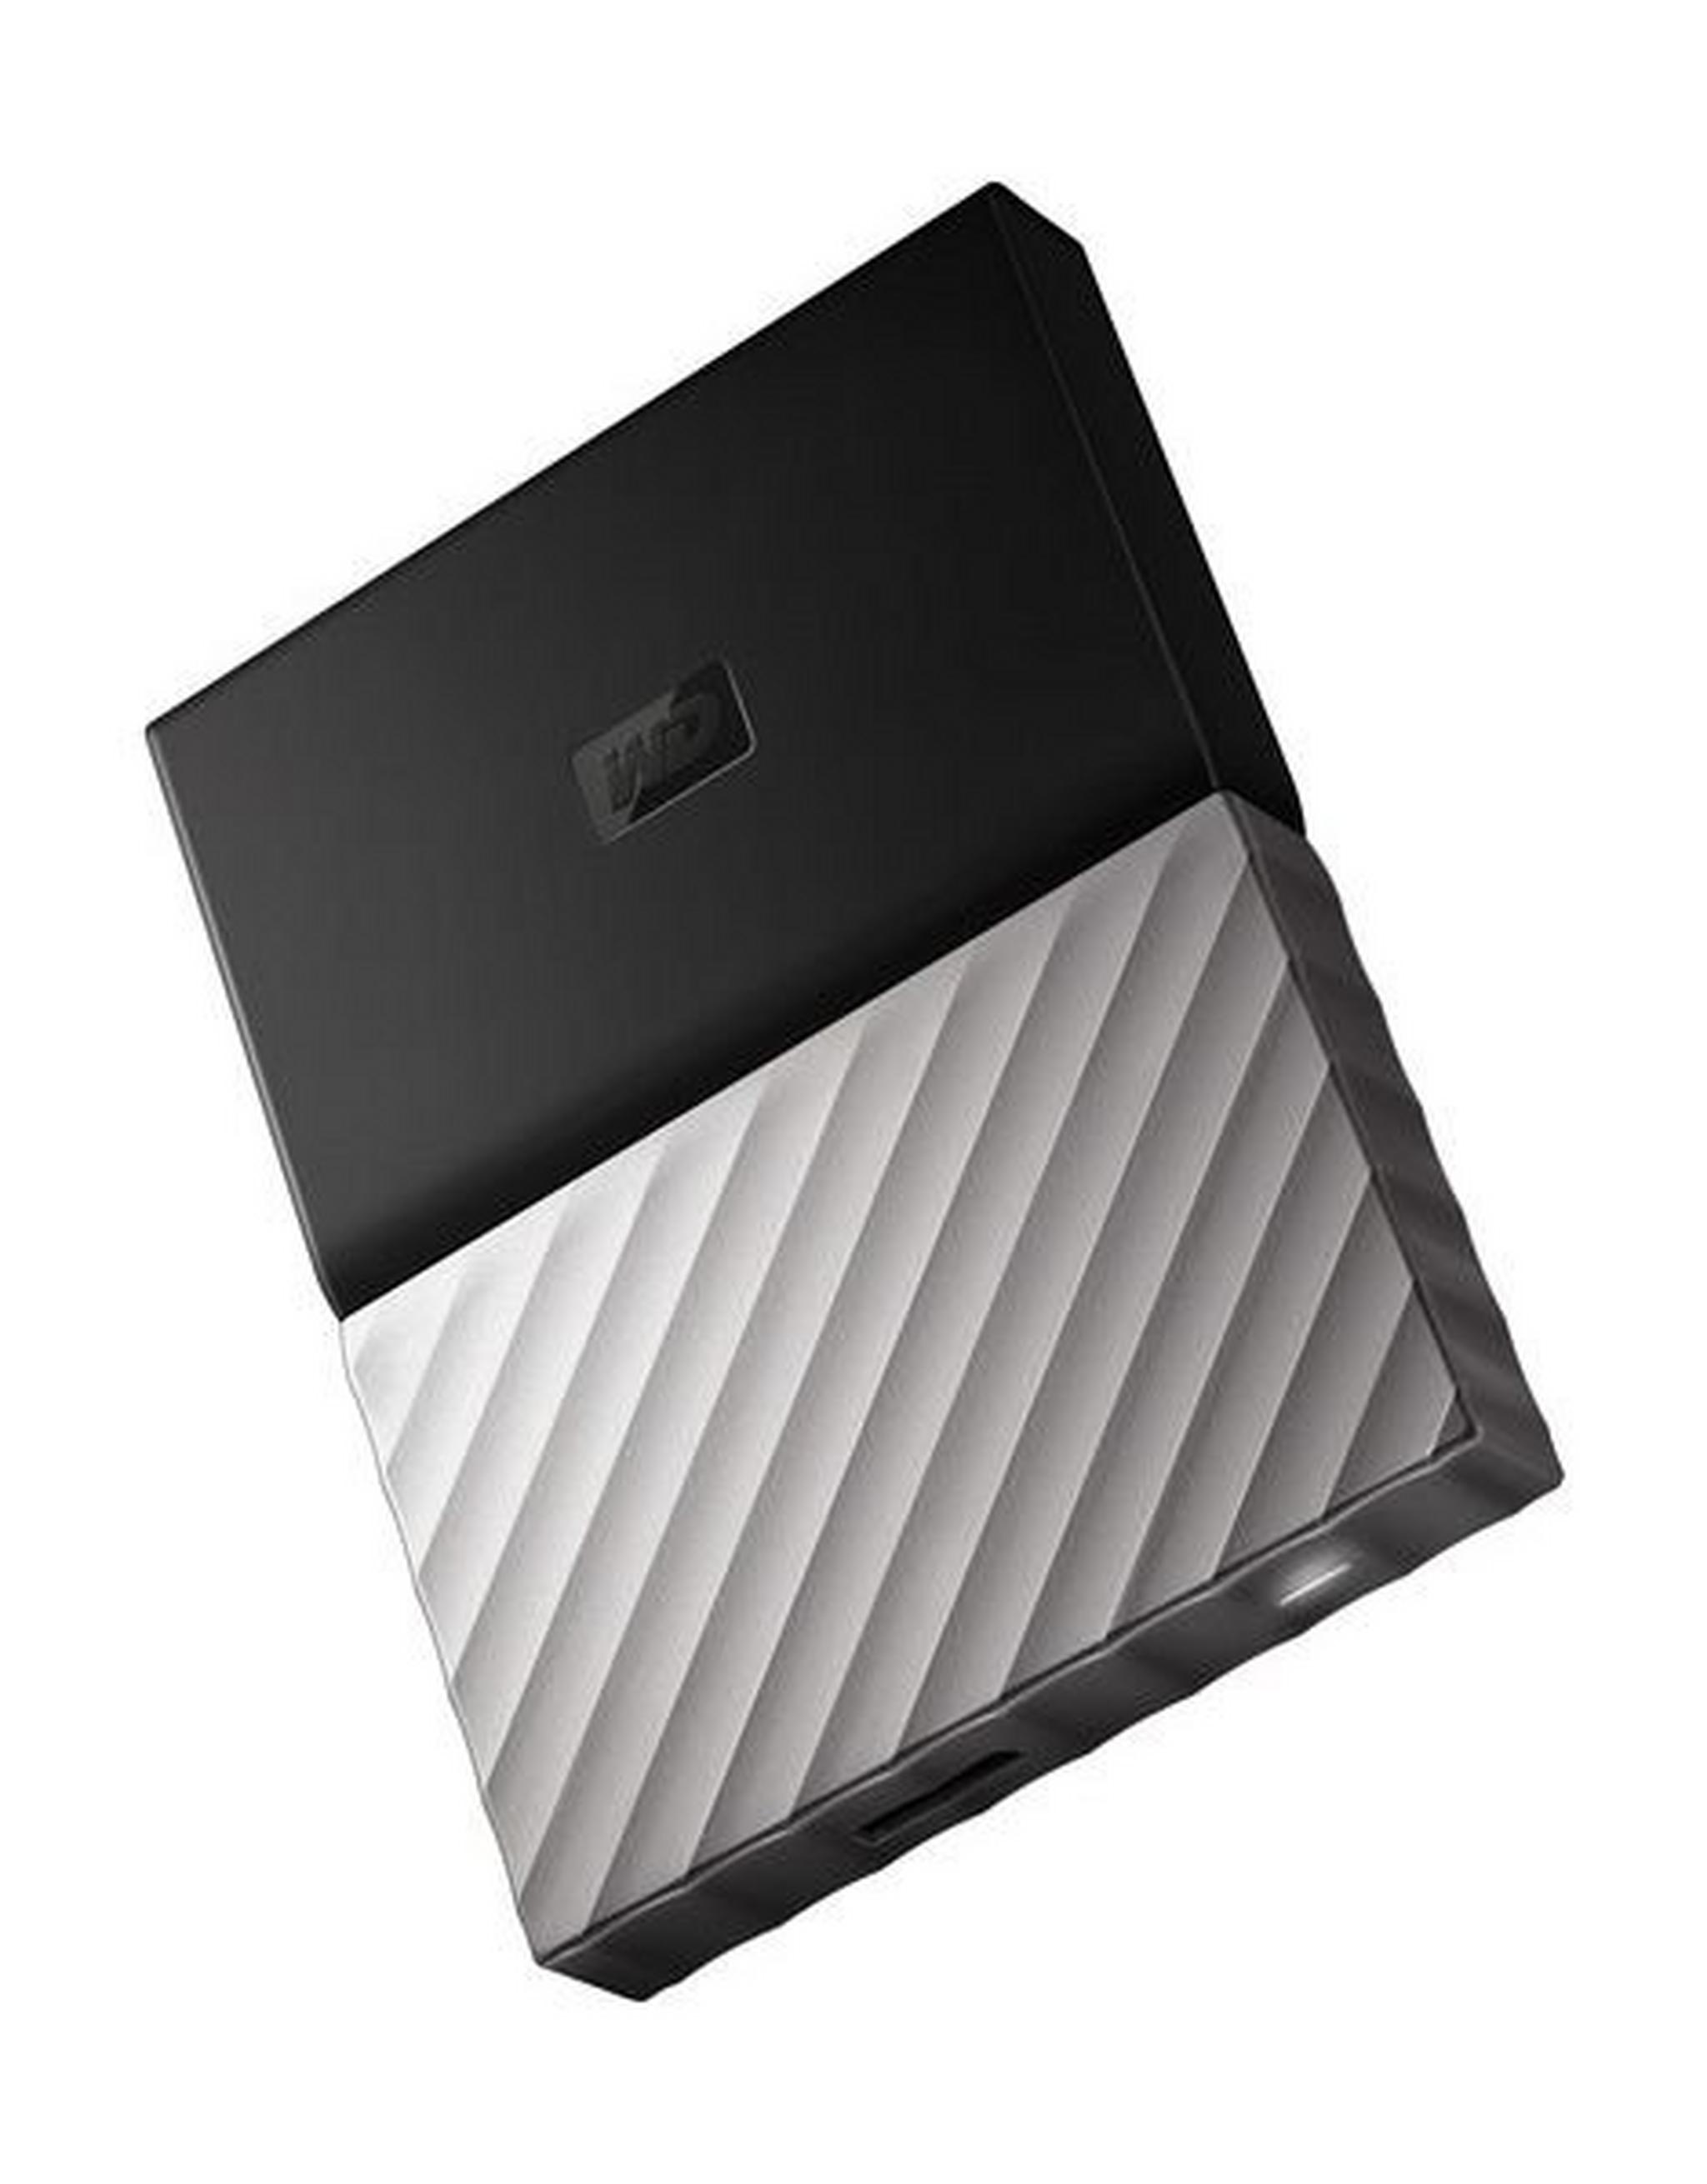 Western Digital My Passport Ultra 4TB Portable HDD (WDBFKT0040BGY) - Black Grey